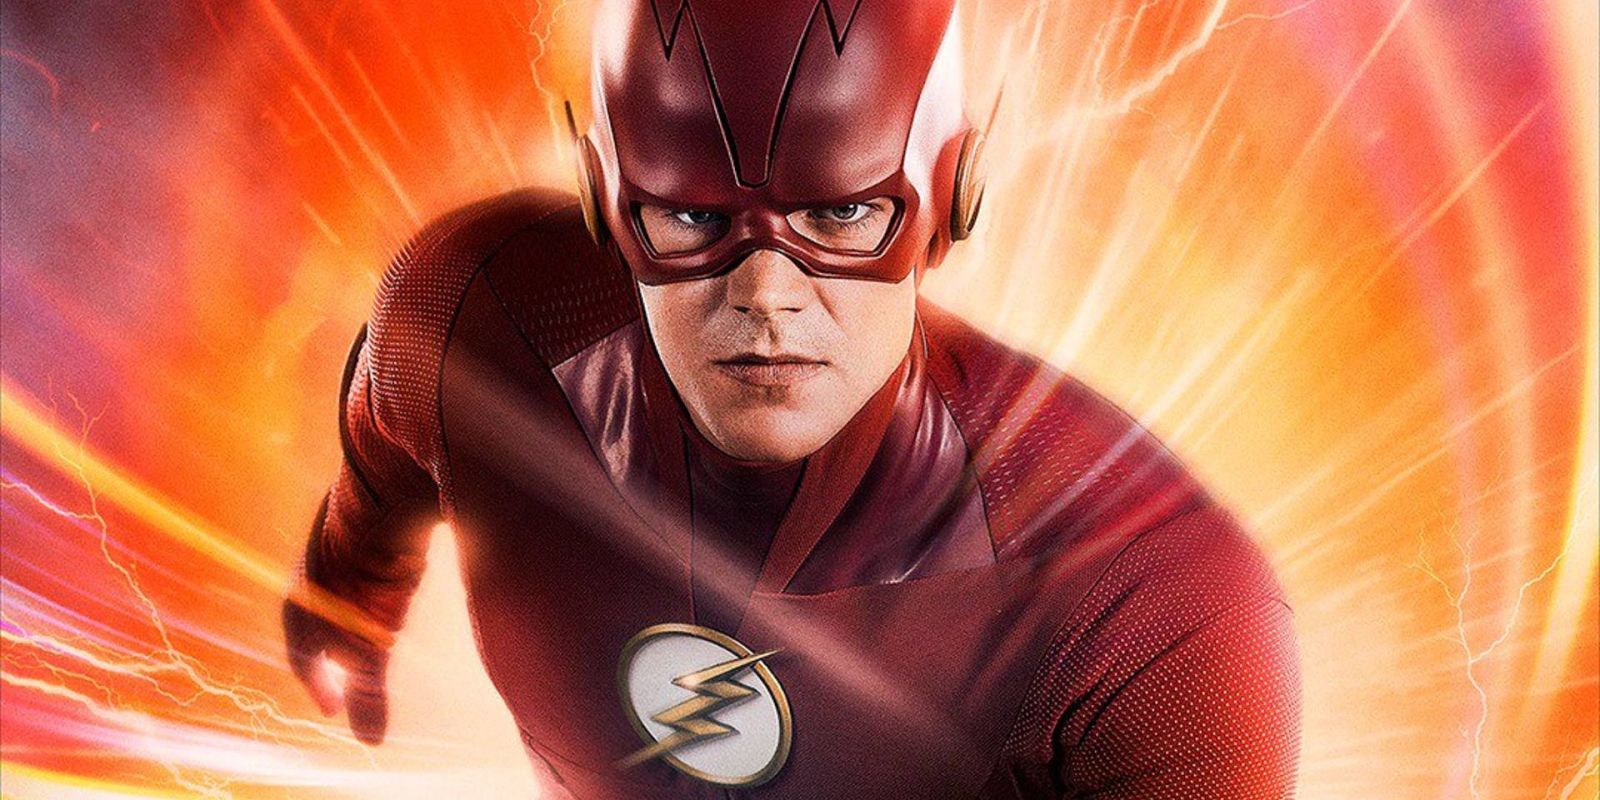 The Flash | Barry Allen encara dois poderosos vilões em prévia de retorno da quinta temporada